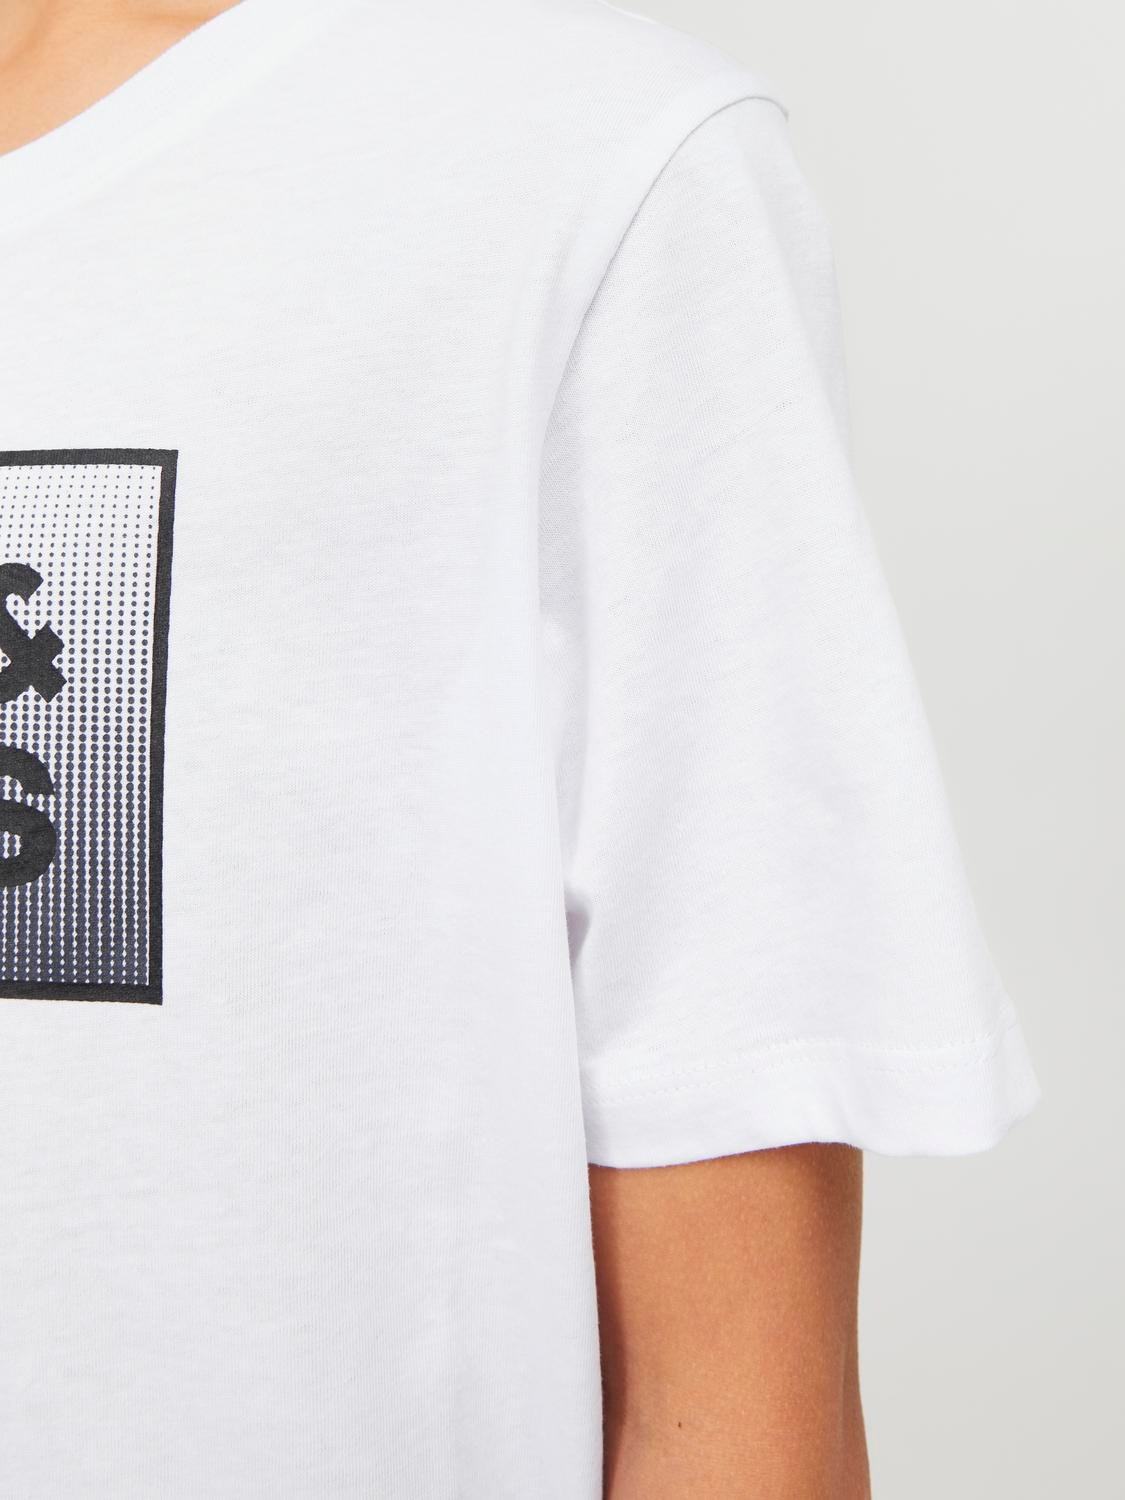 Jack & Jones Printet T-shirt Til drenge -White - 12249633